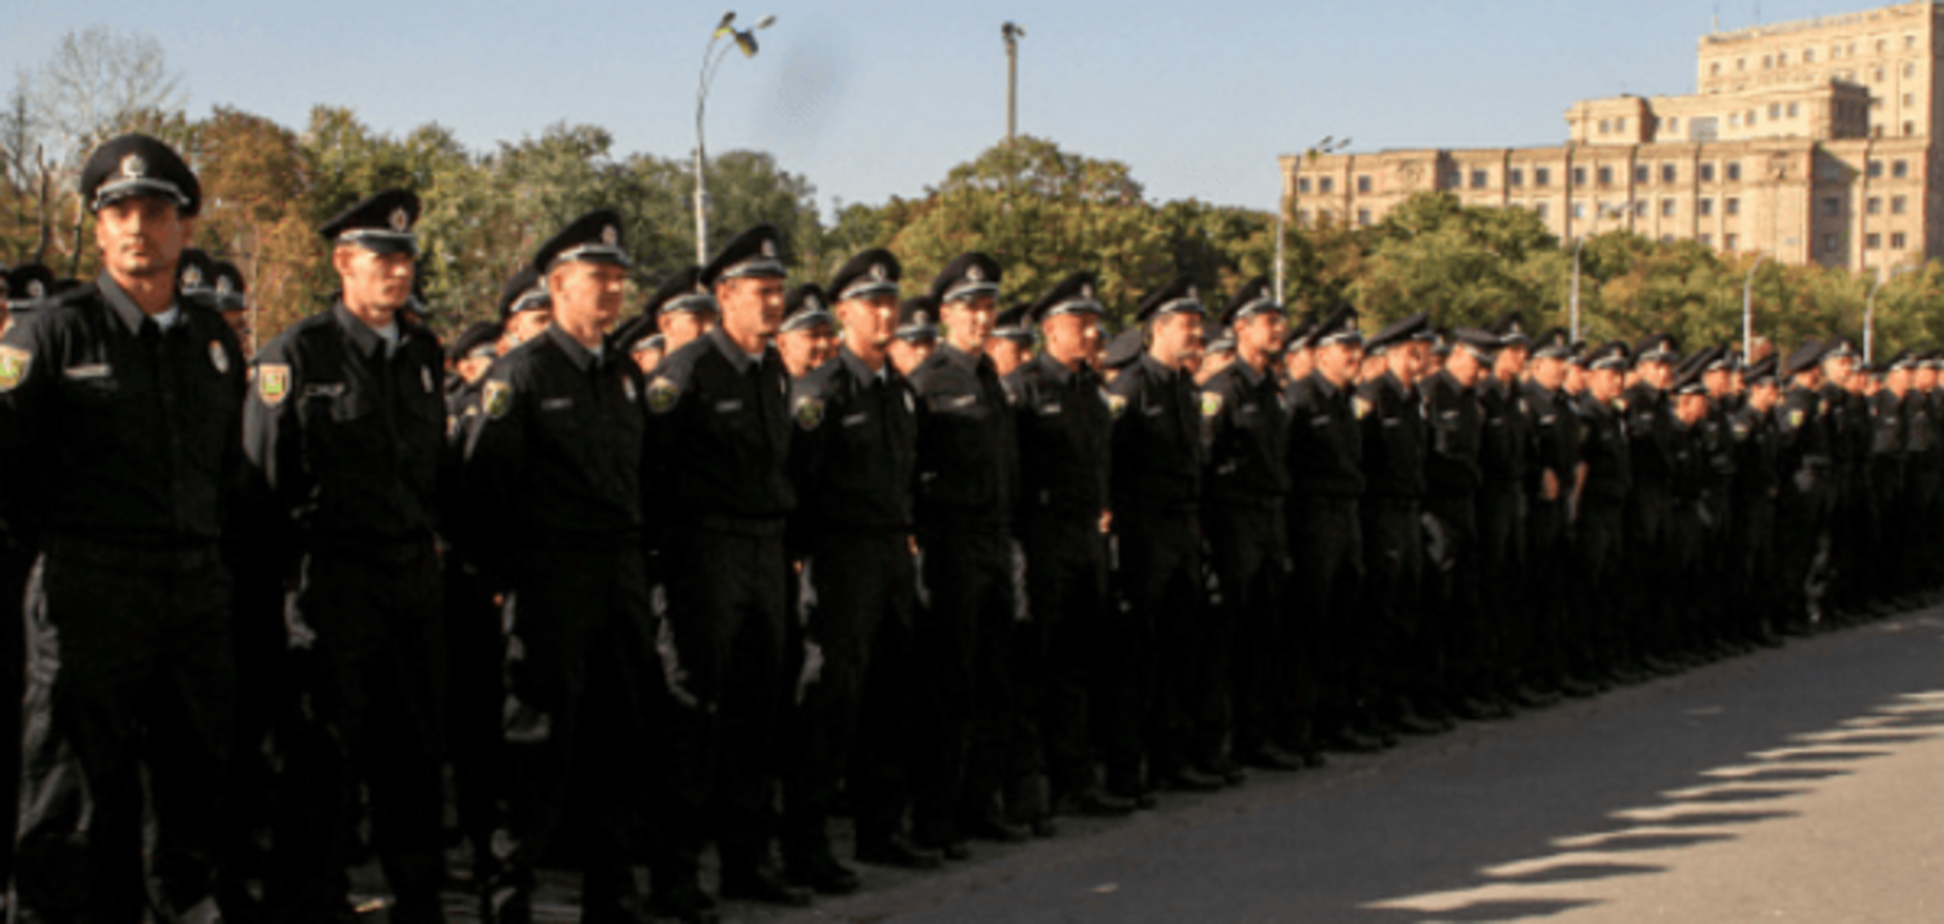 Нацполиция выделила 700 силовиков для охраны Генконсульства России в Харькове